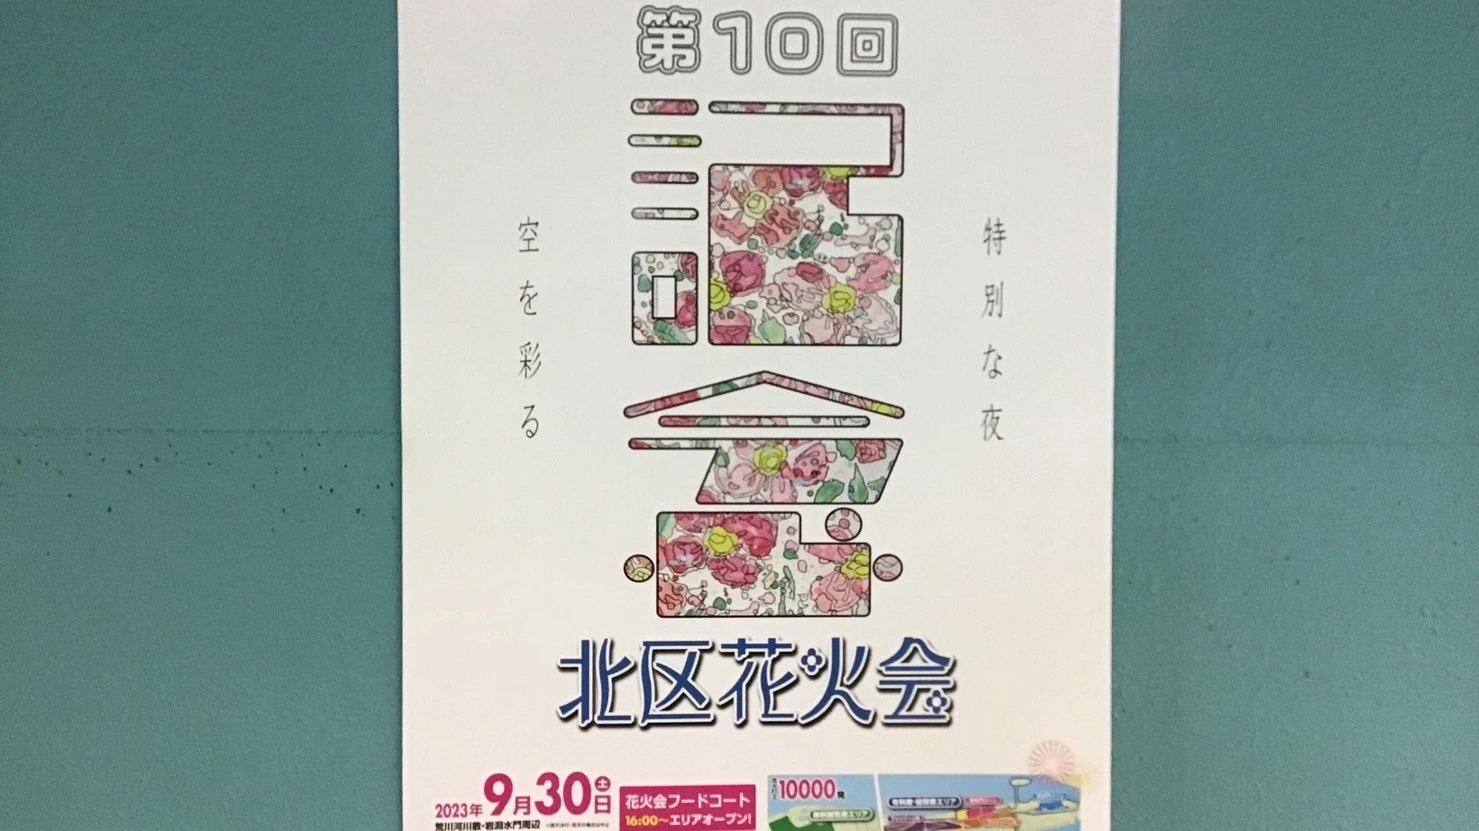 【東京都北区】9/30に開催される第10回「北区花火会」のポスター